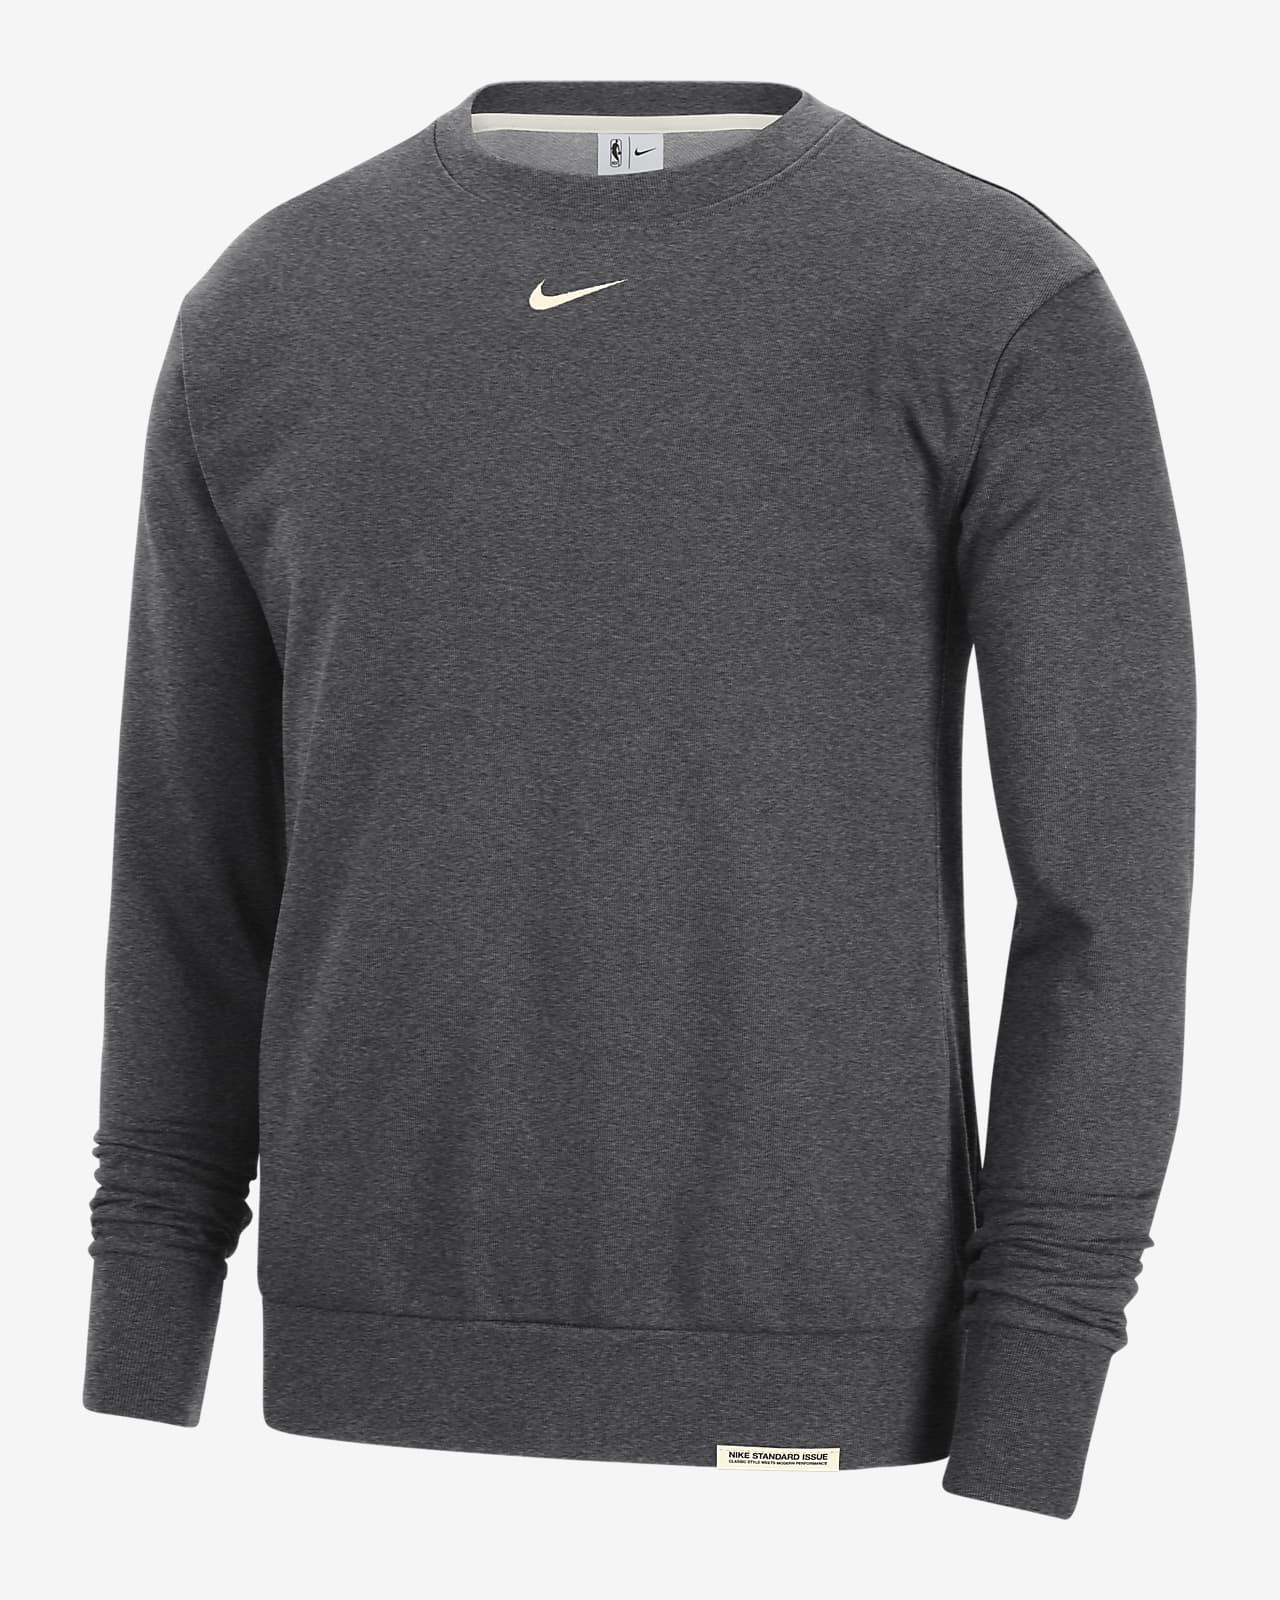 Team 31 Standard Issue Men's Nike Dri-FIT NBA Sweatshirt